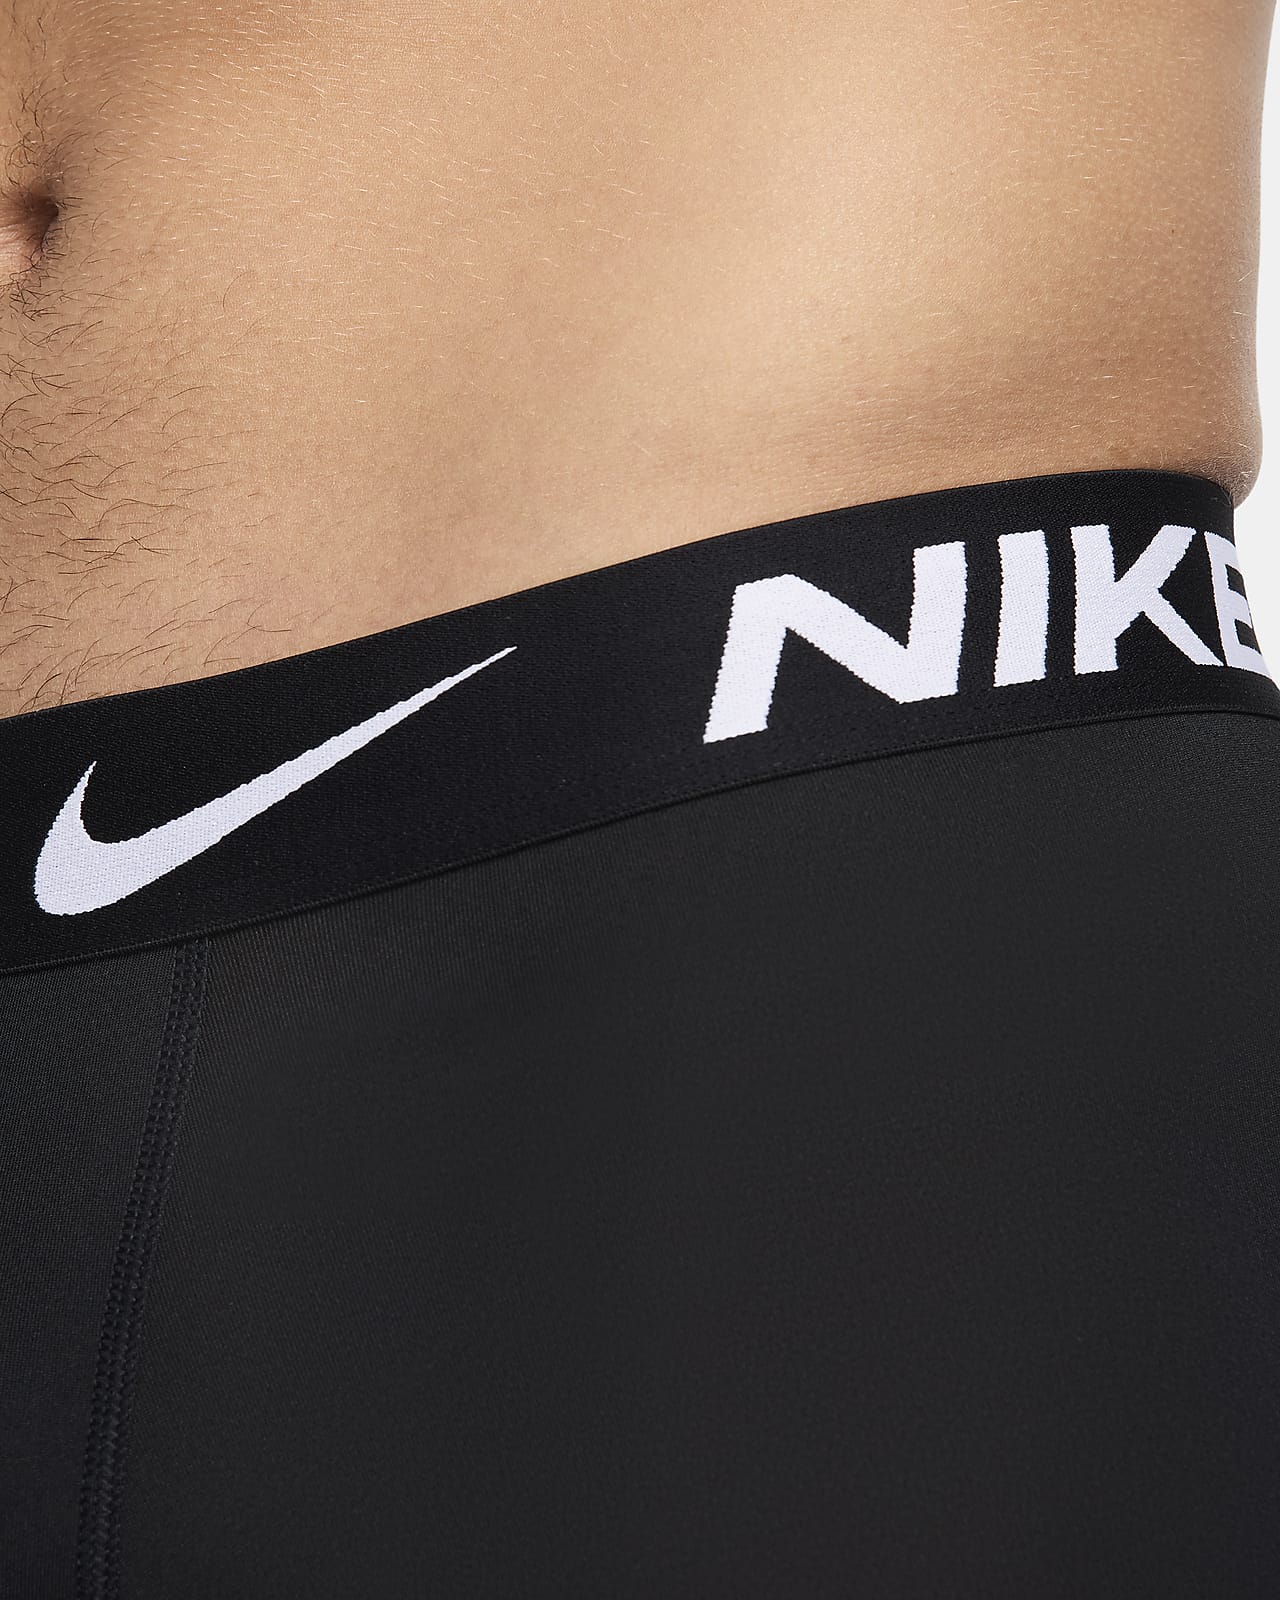 La mejor ropa interior de Nike para hombre. Nike